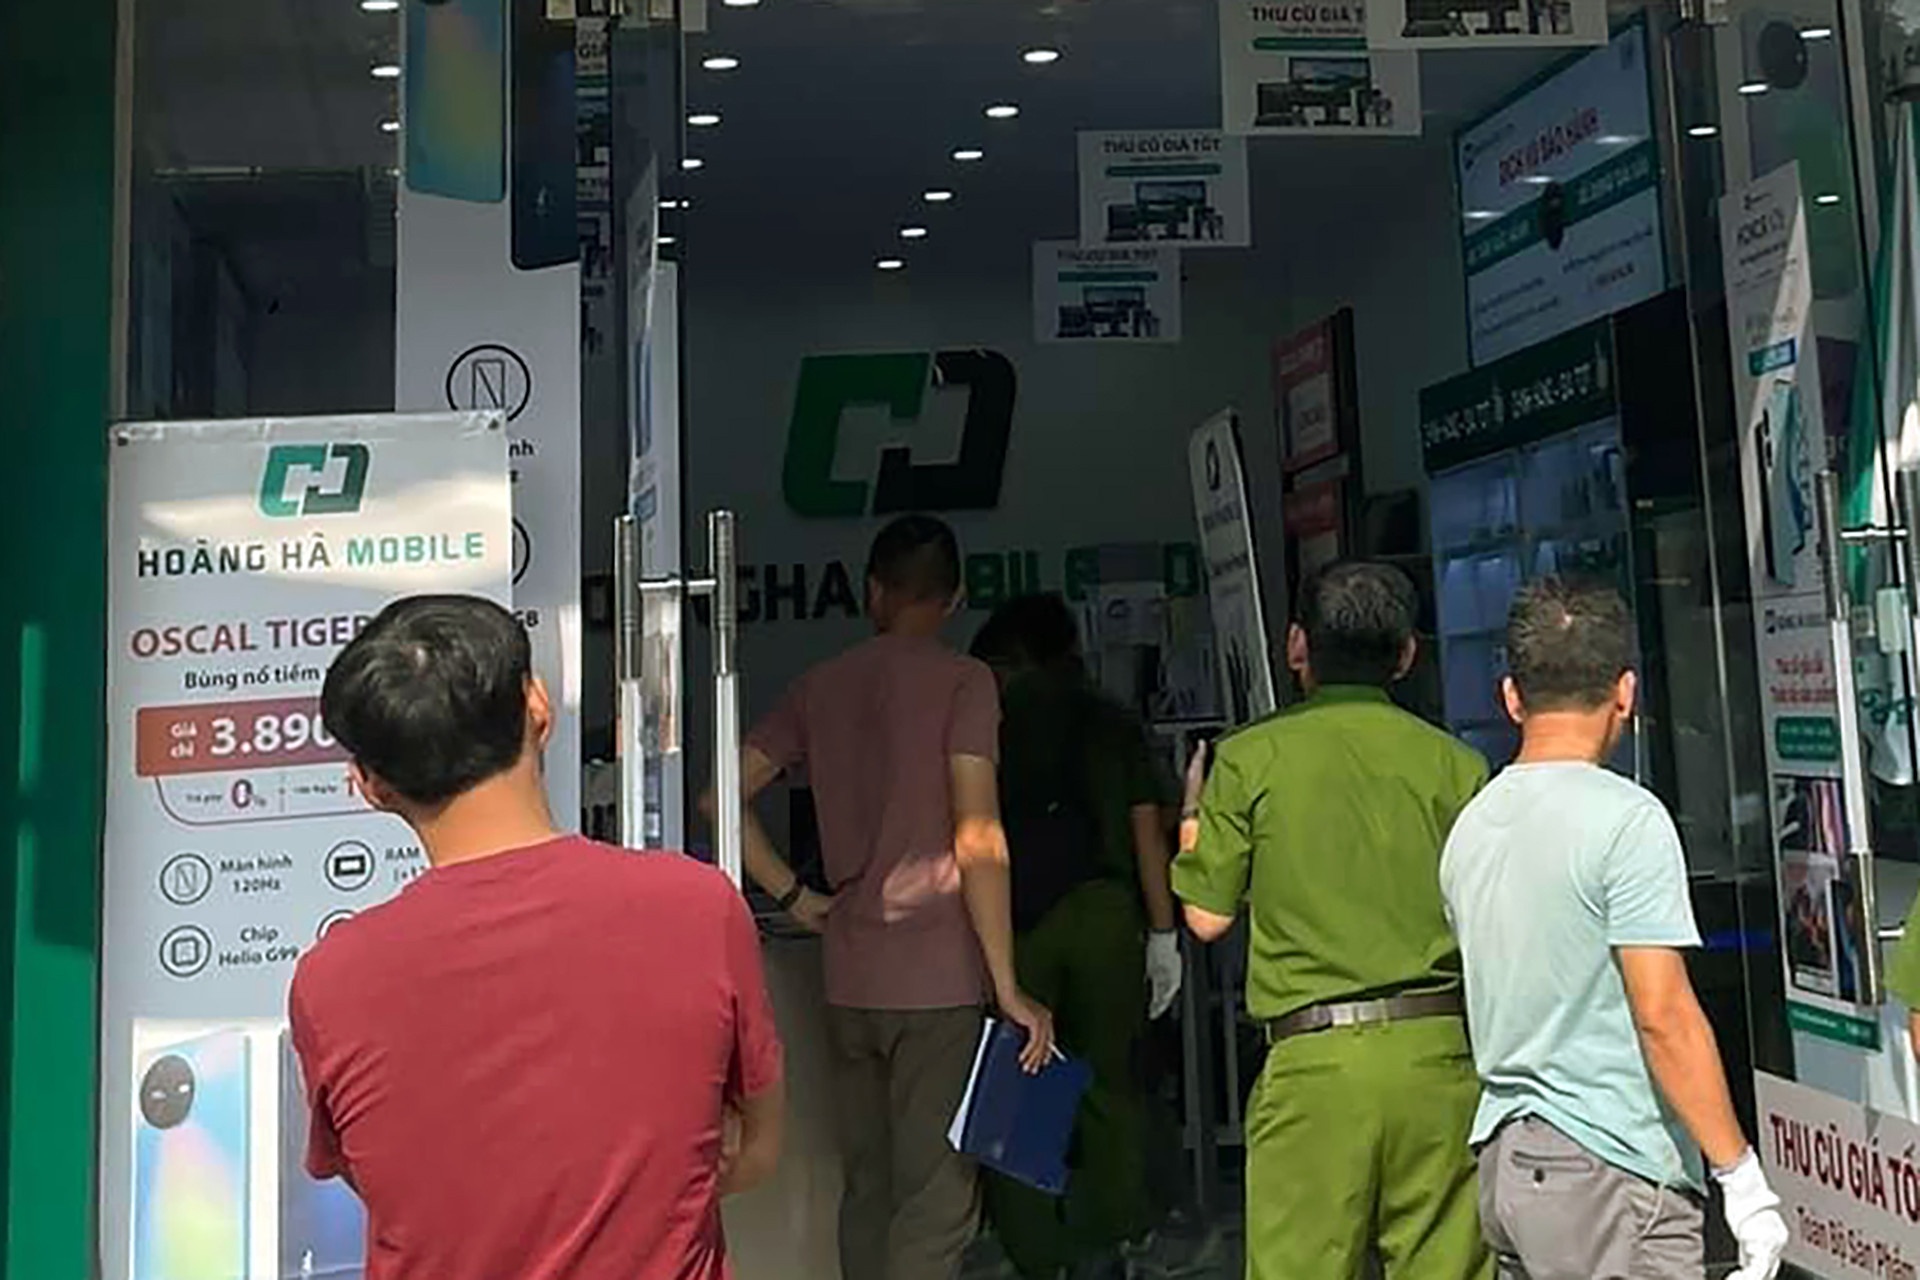 Bắt nhóm nghi can nước ngoài cướp cửa hàng điện thoại ở Nha Trang - ảnh 2